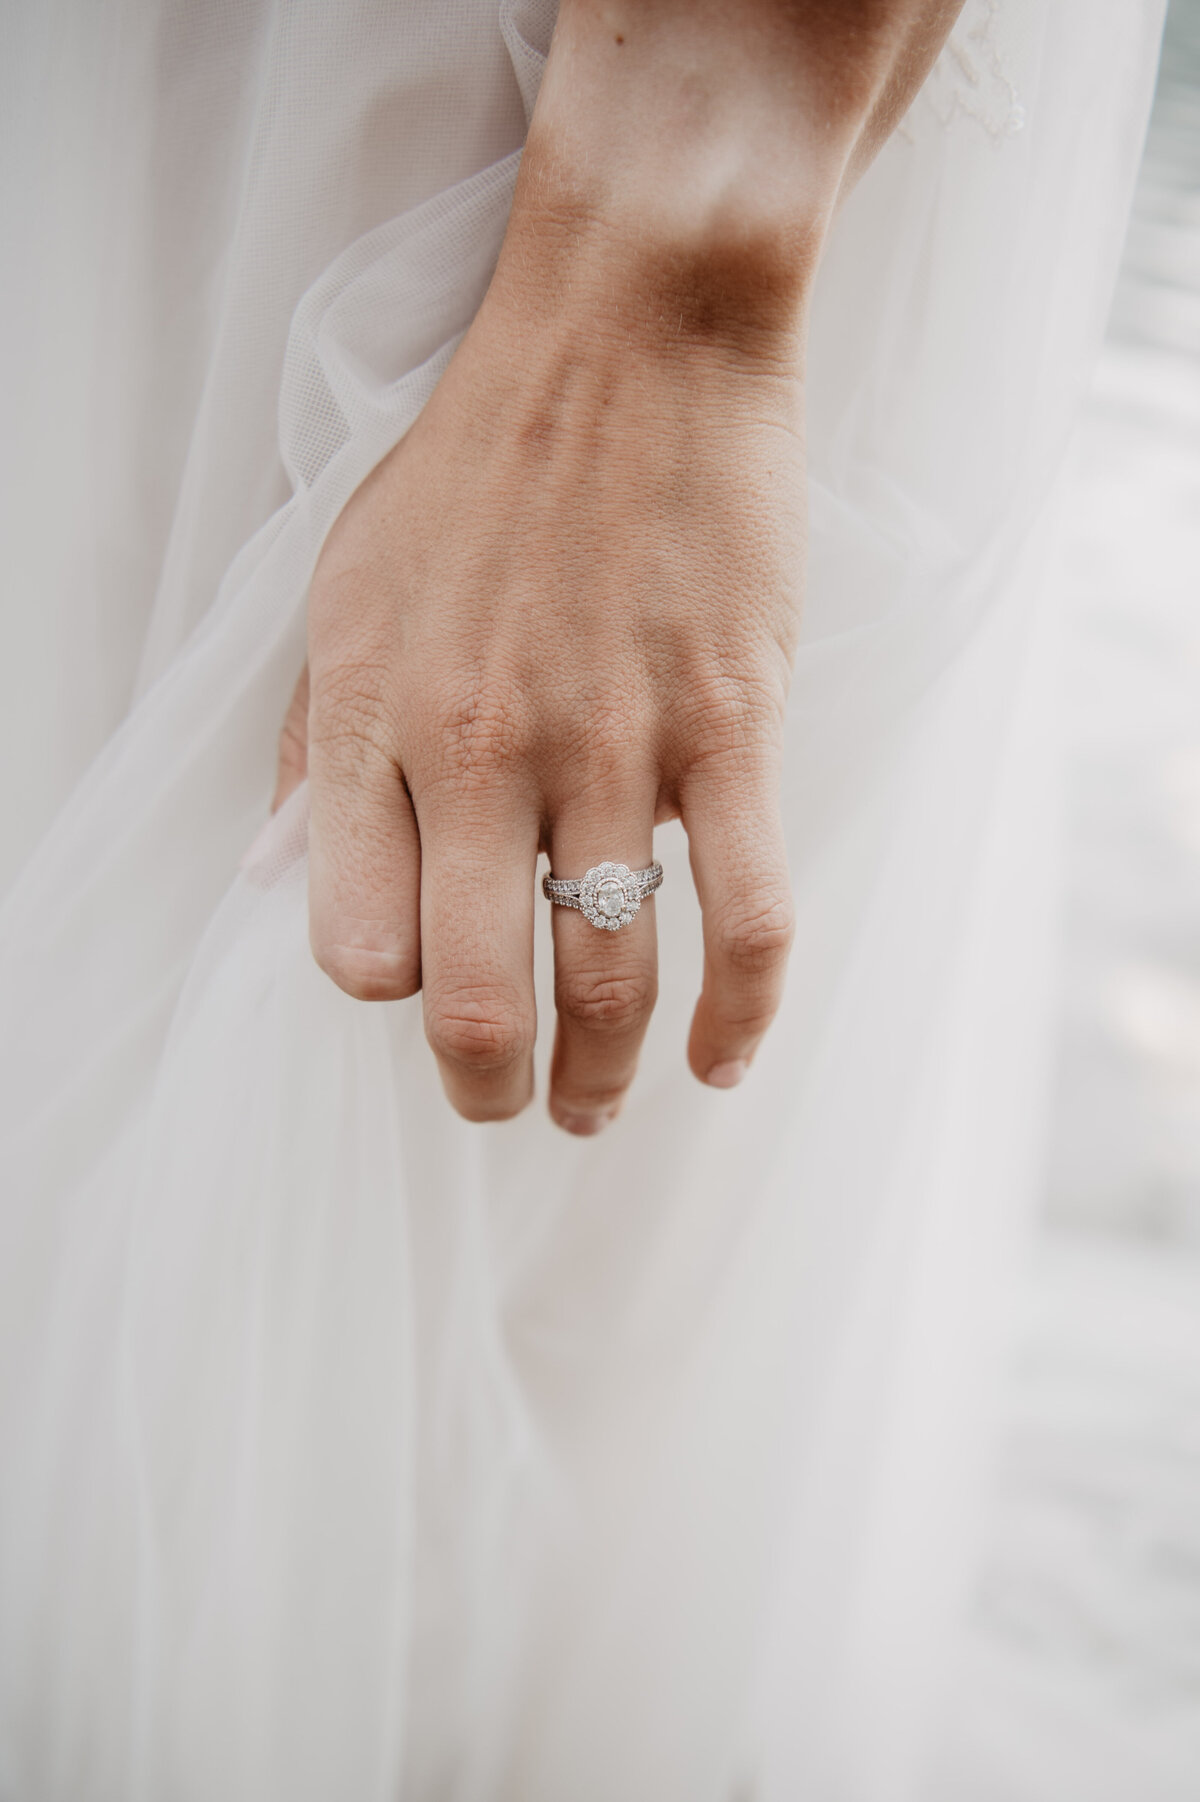 Jackson Hole Photographers capture bride wearing engagement ring